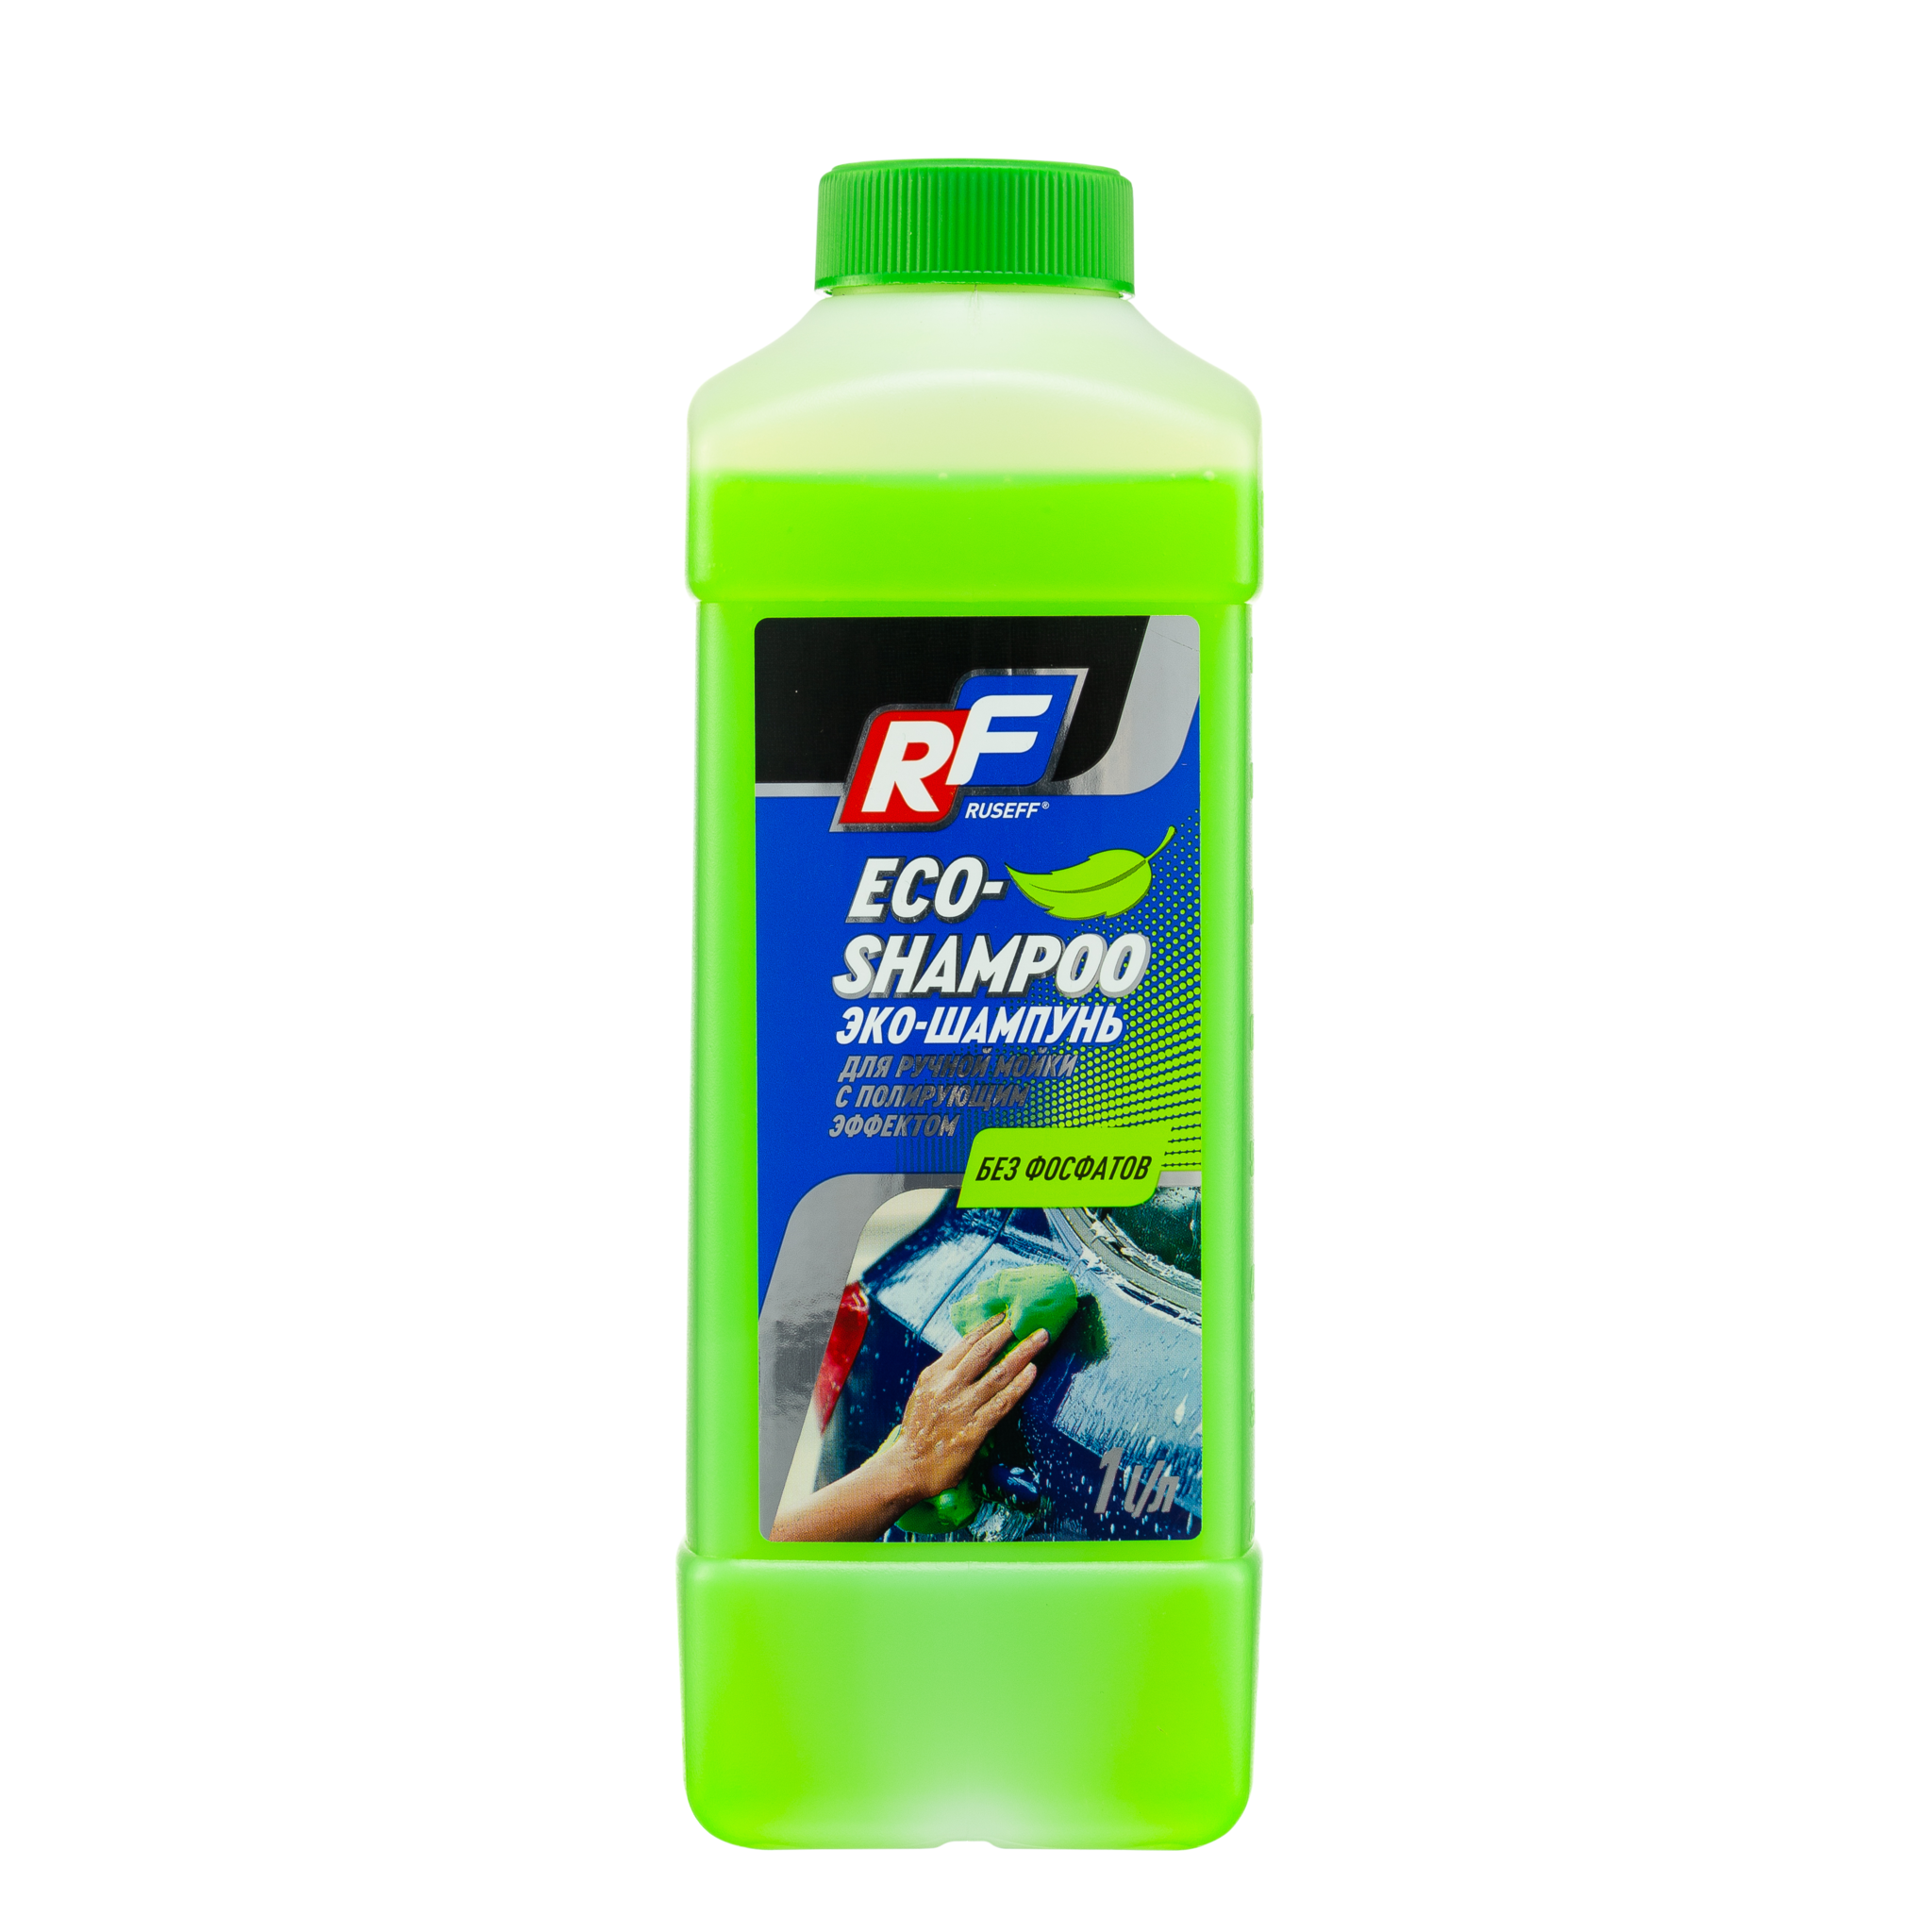 Ruseff ECO-Shampoo Эко-шампунь с полирующим эффектом